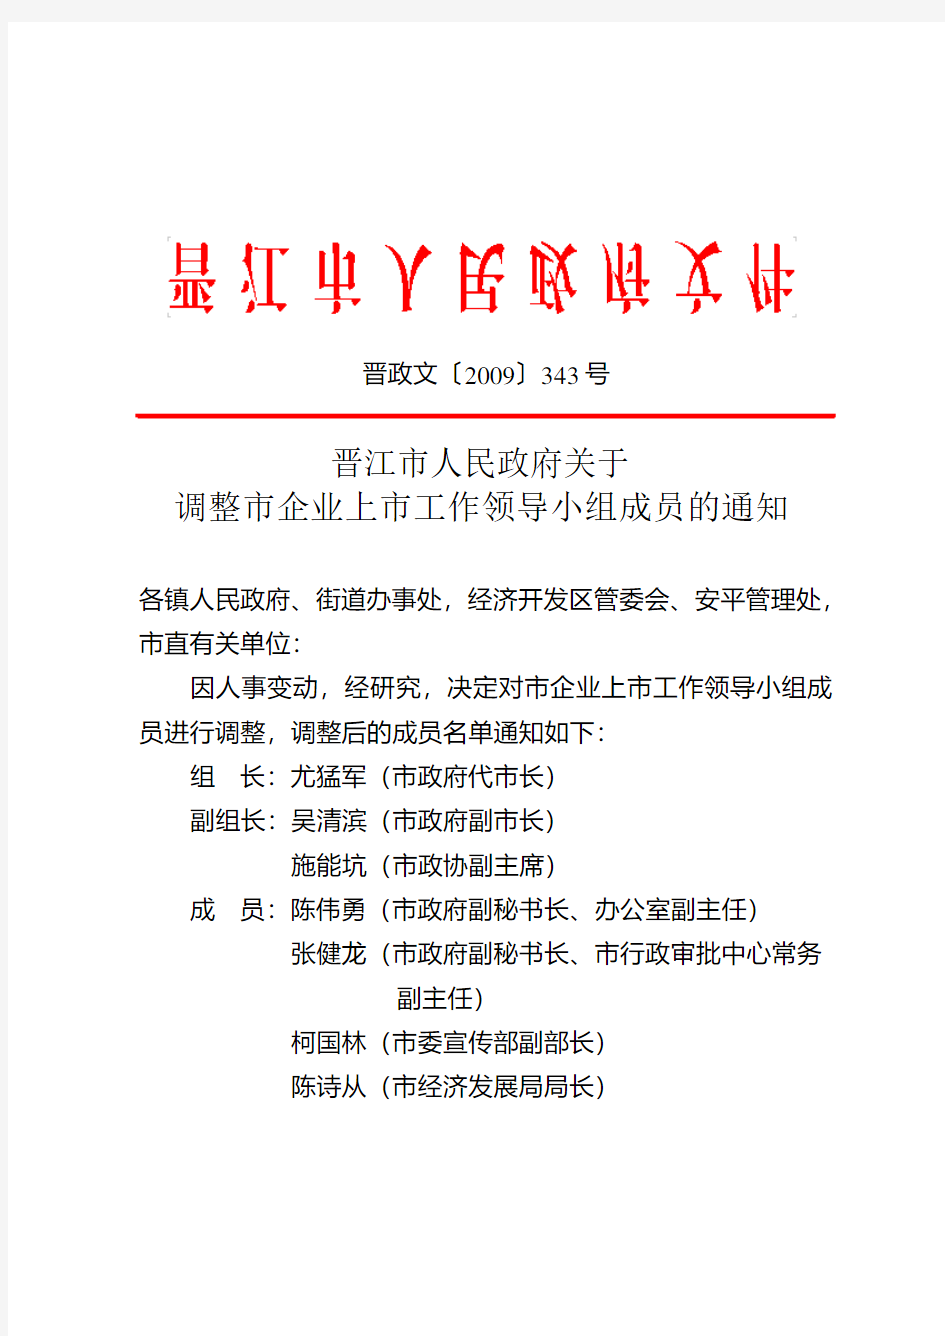 晋江市人民政府关于调整市企业上市工作领导小组成员的通知